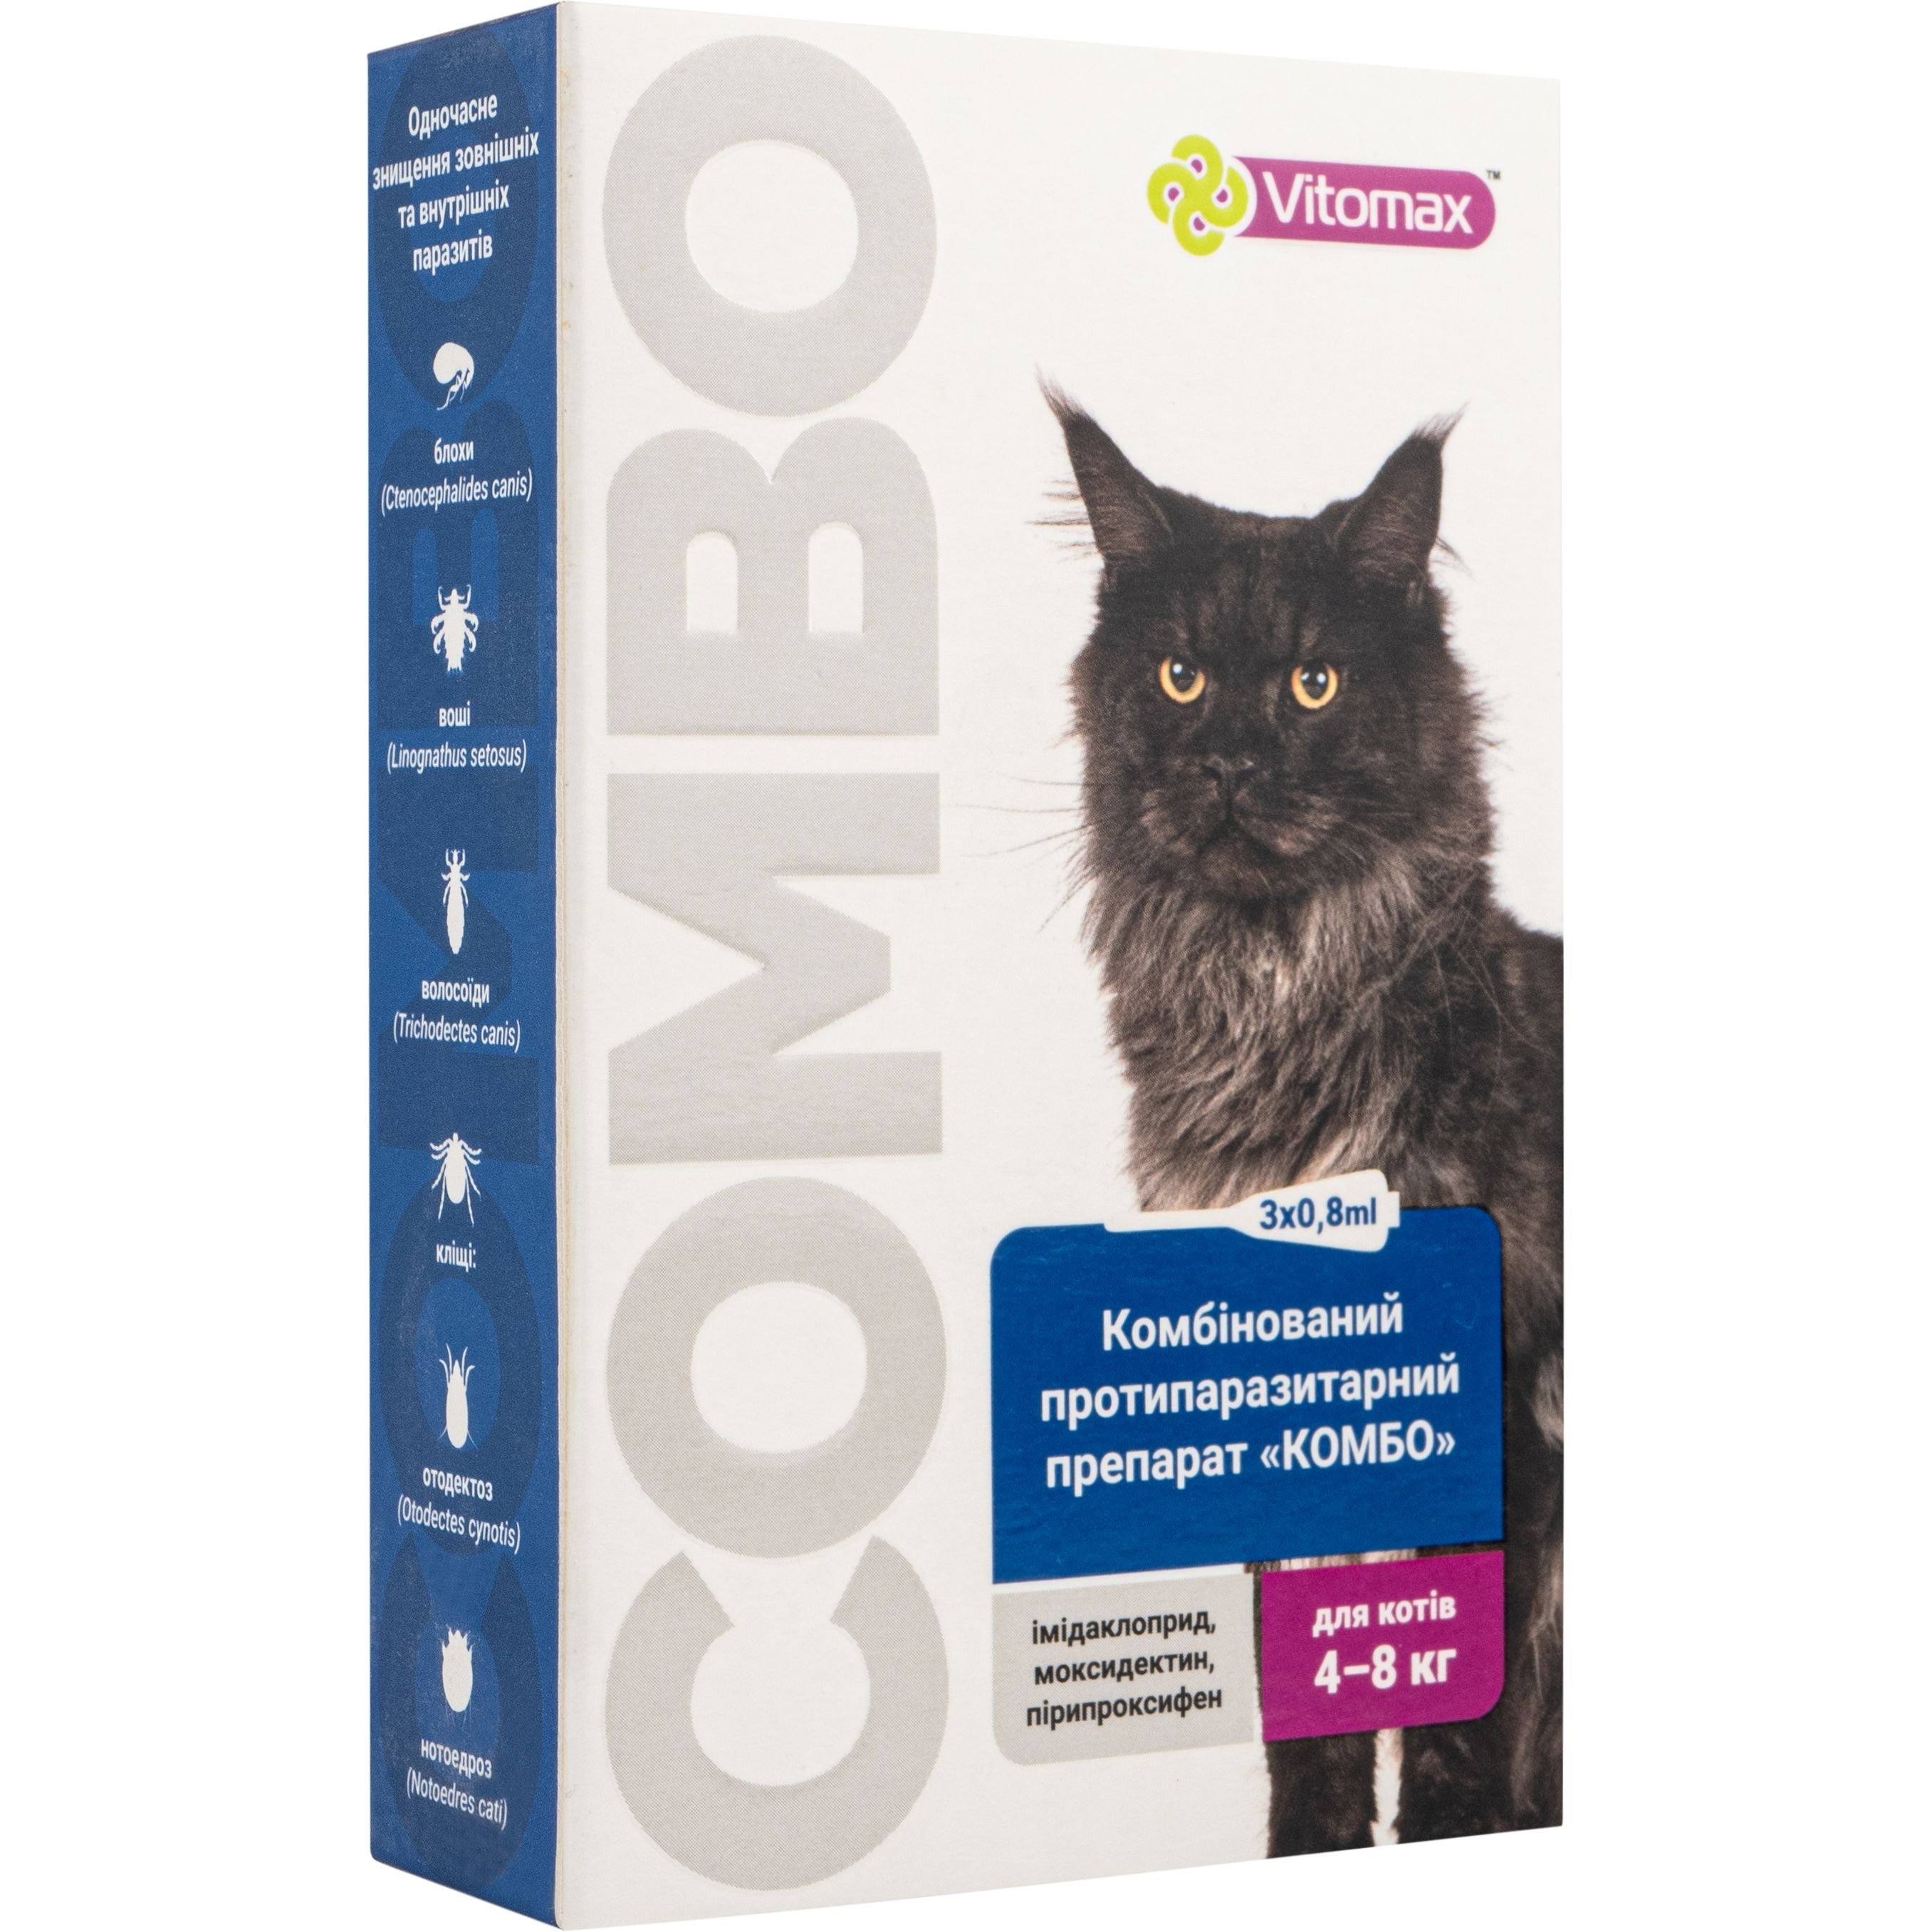 Капли Vitomax комбо для кошек 4 - 8 кг, 0.8 мл, 3 шт. - фото 1